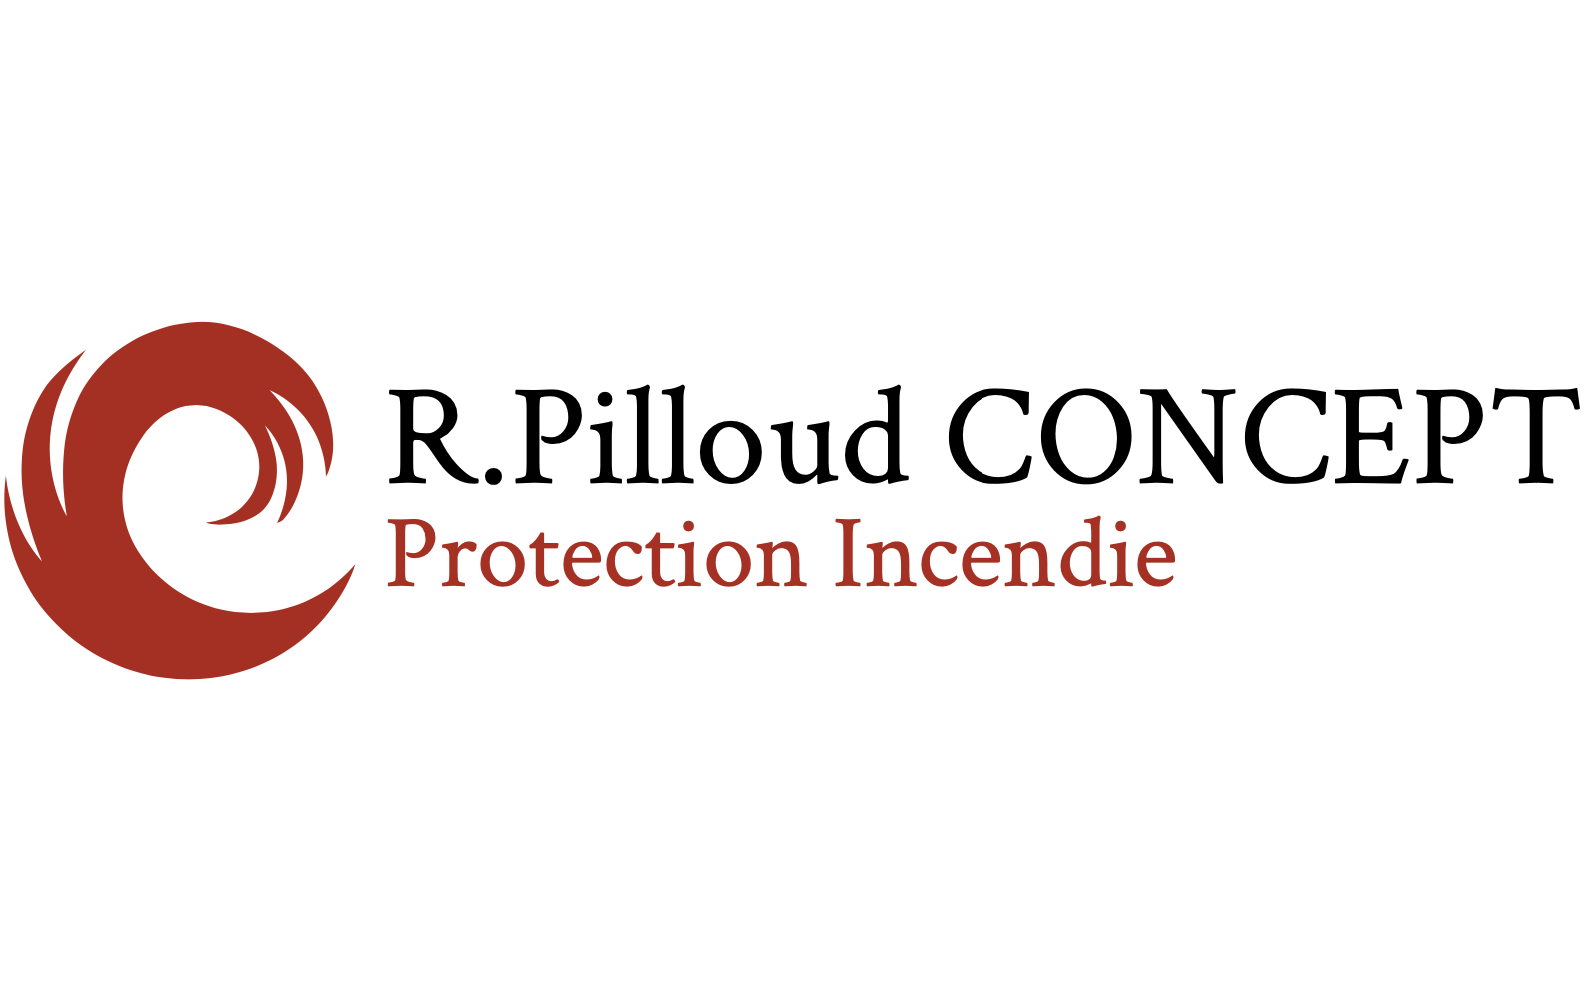 R.Pilloud CONCEPT